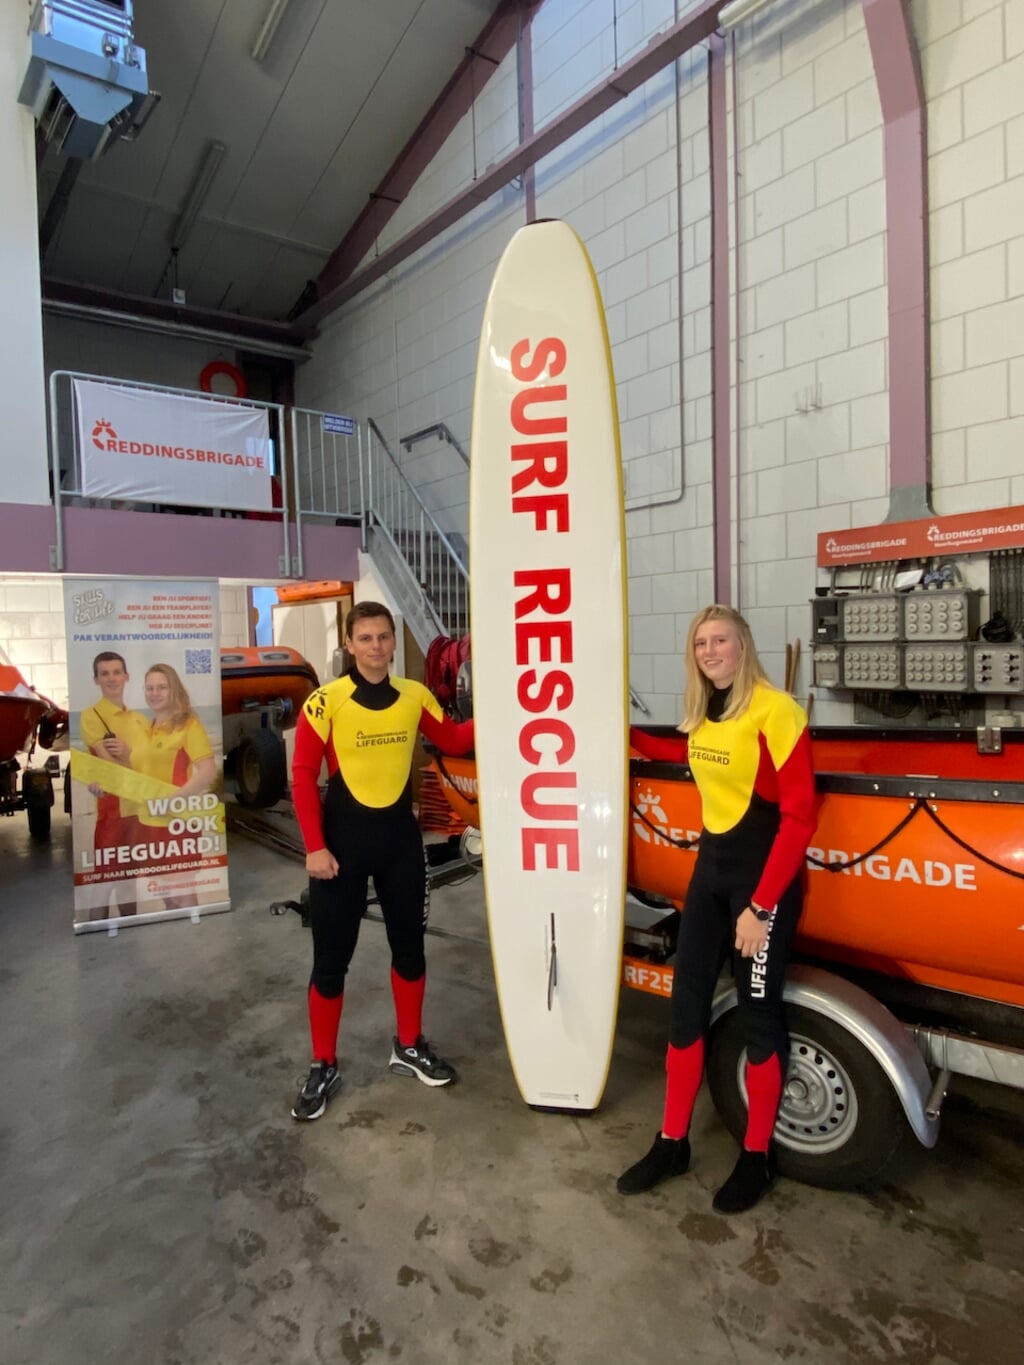 Lifeguards delen hun ervaringen tijdens de open dag.